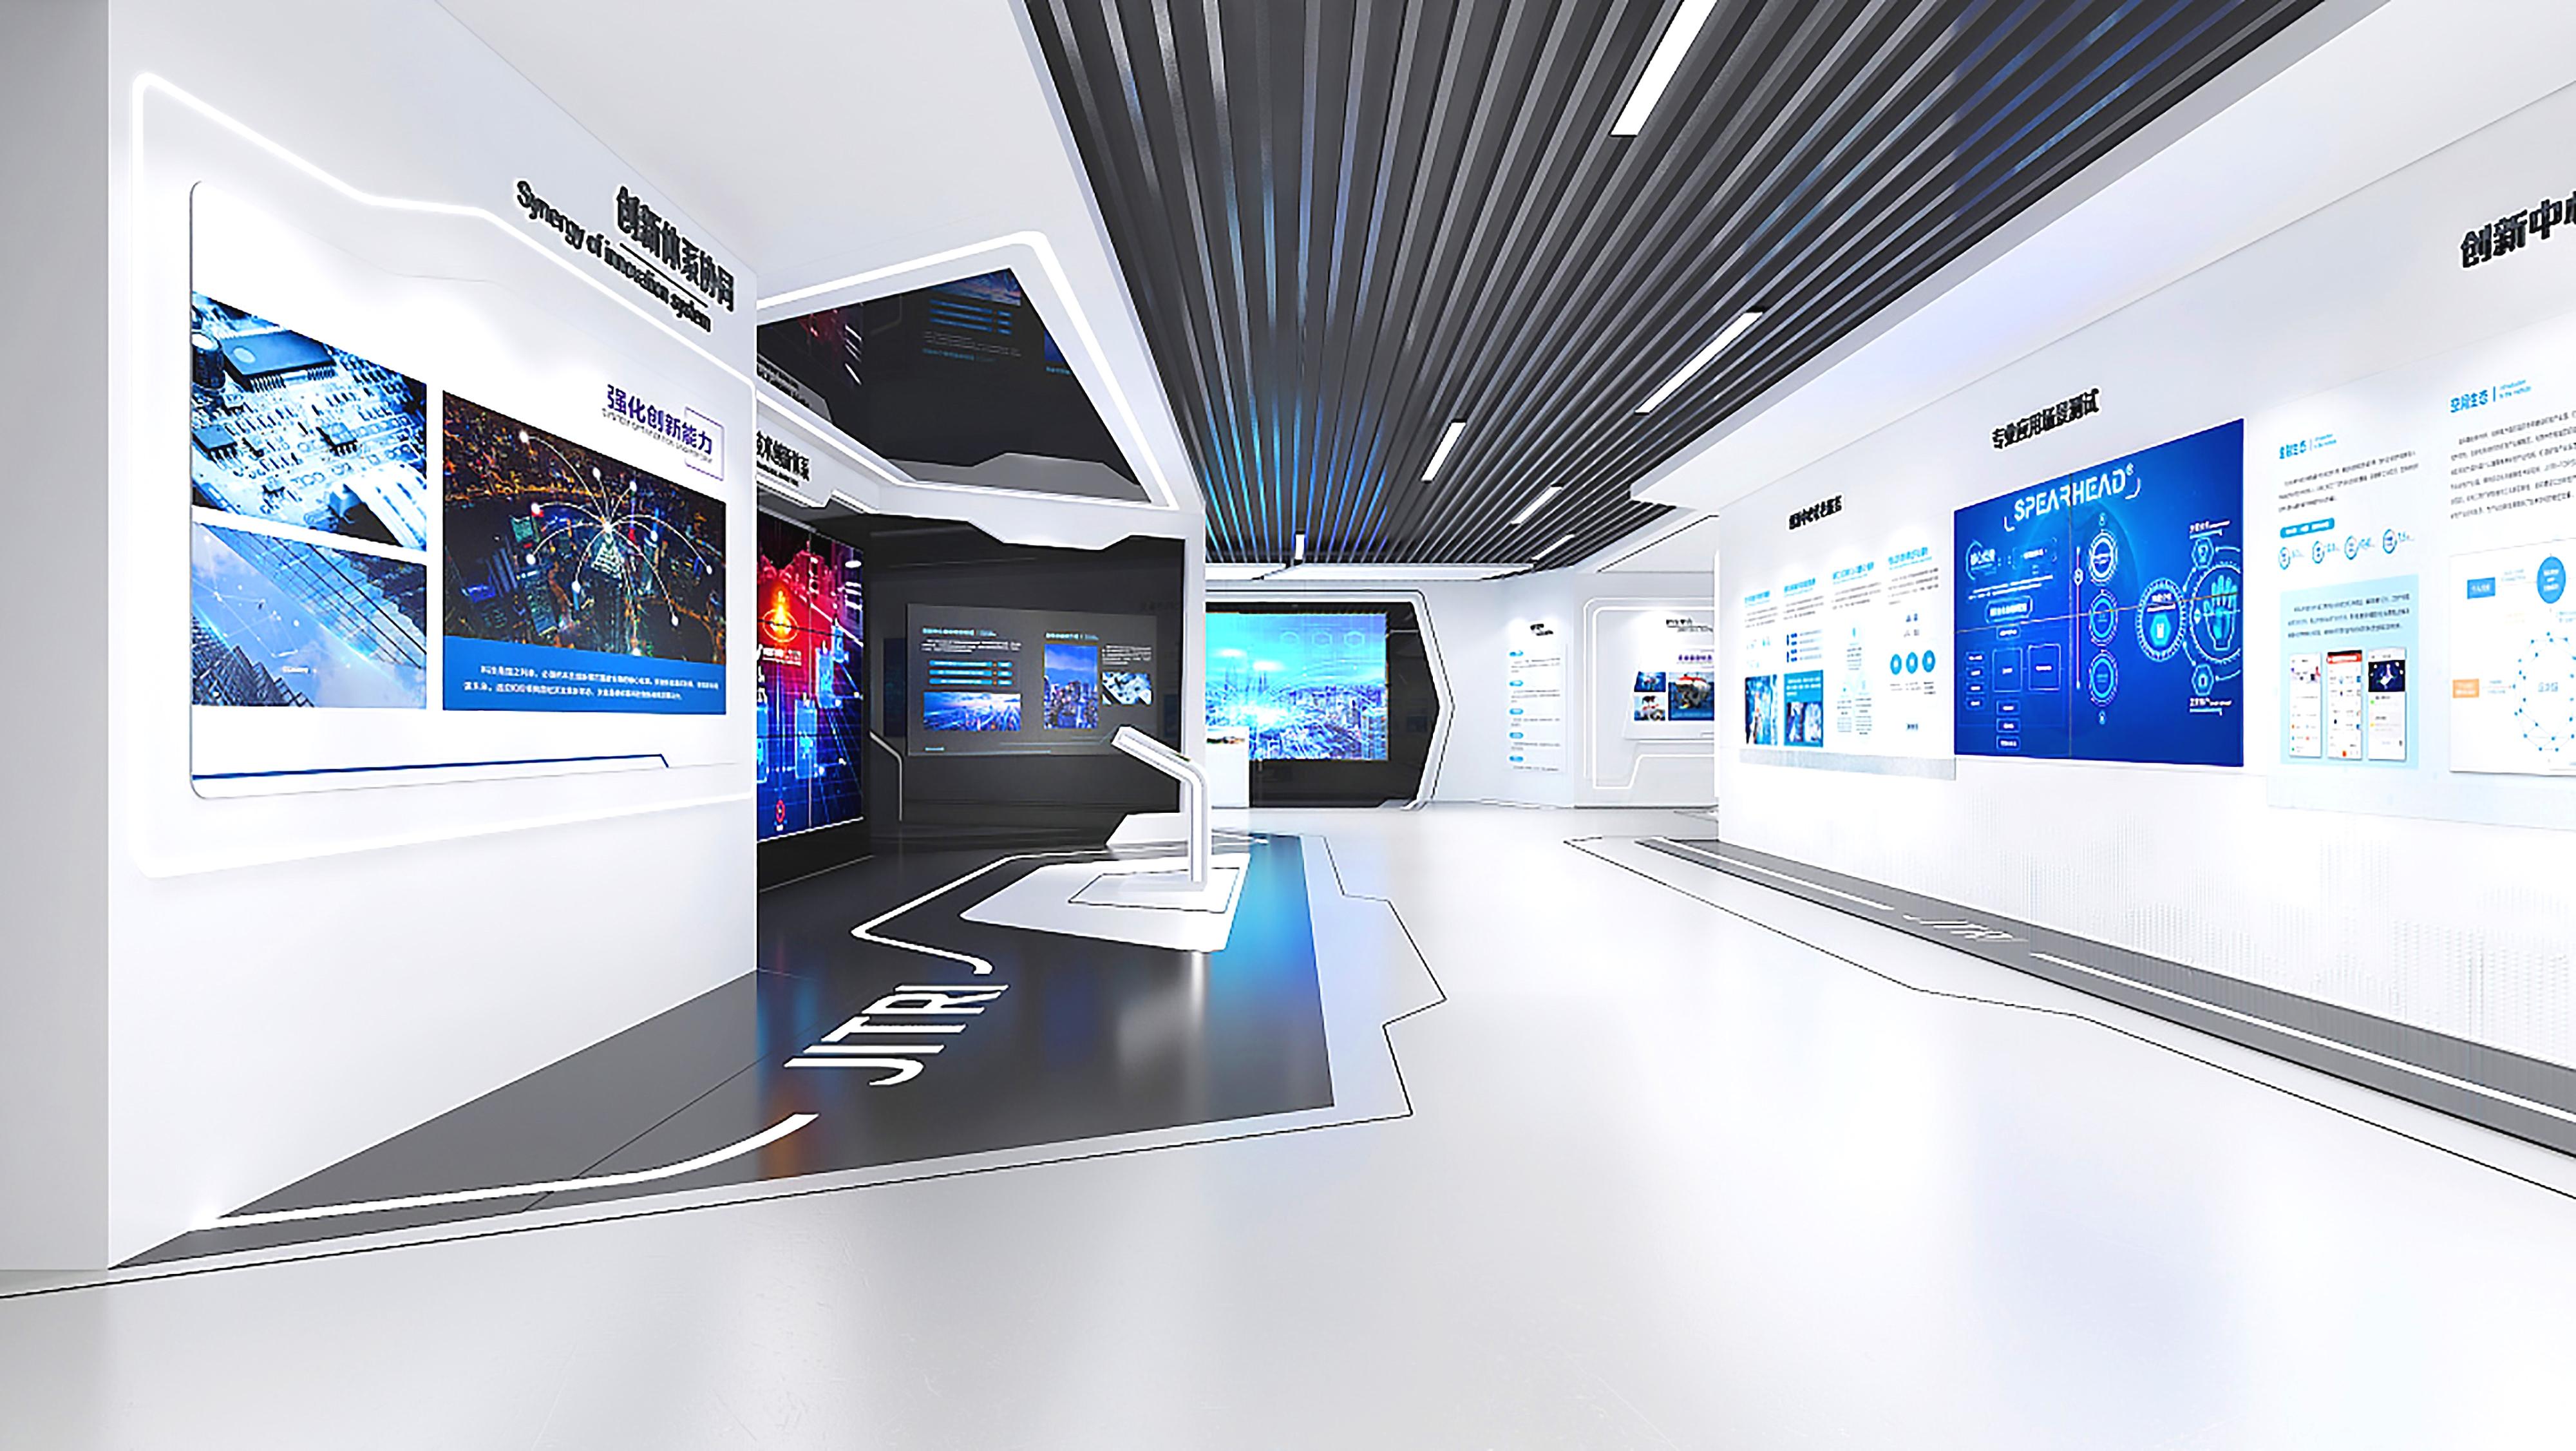 这是一间现代风格的展览厅，墙上挂着多个显示屏，展示科技信息。室内设计简洁，以白色和蓝色为主调。